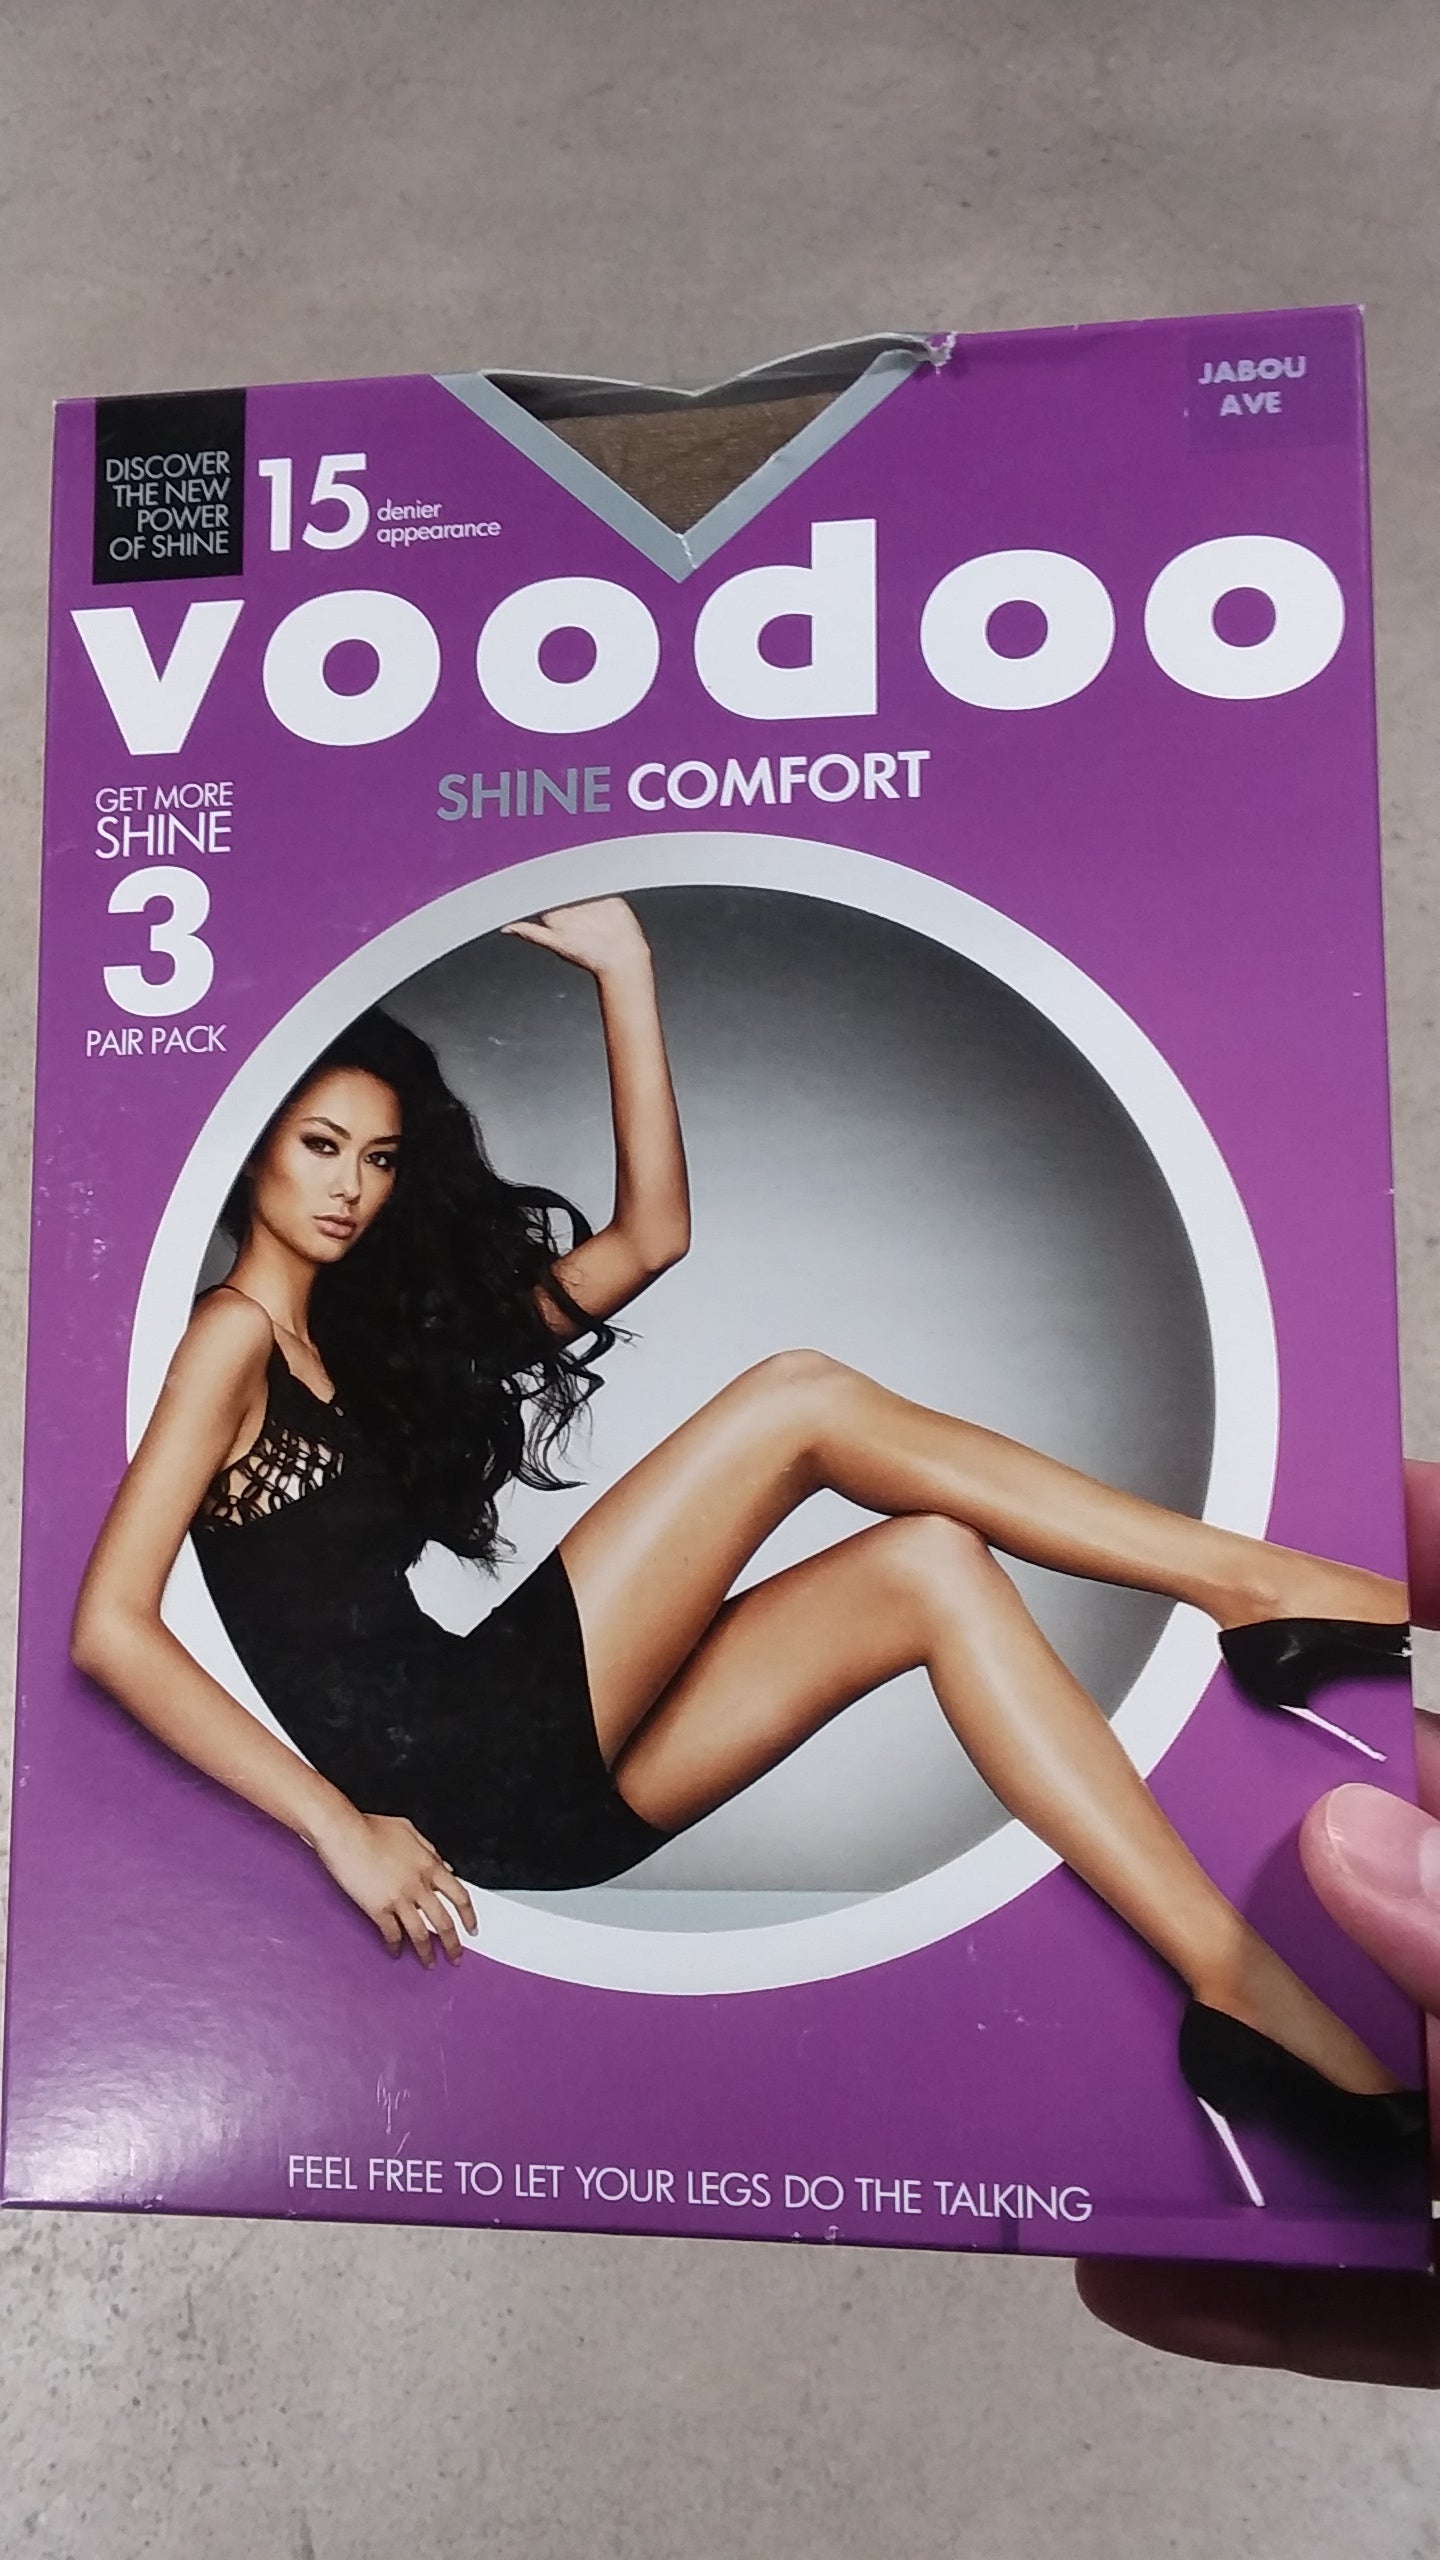 Voodoo Stockings Shine Comfort 3 Pk Jabou Average